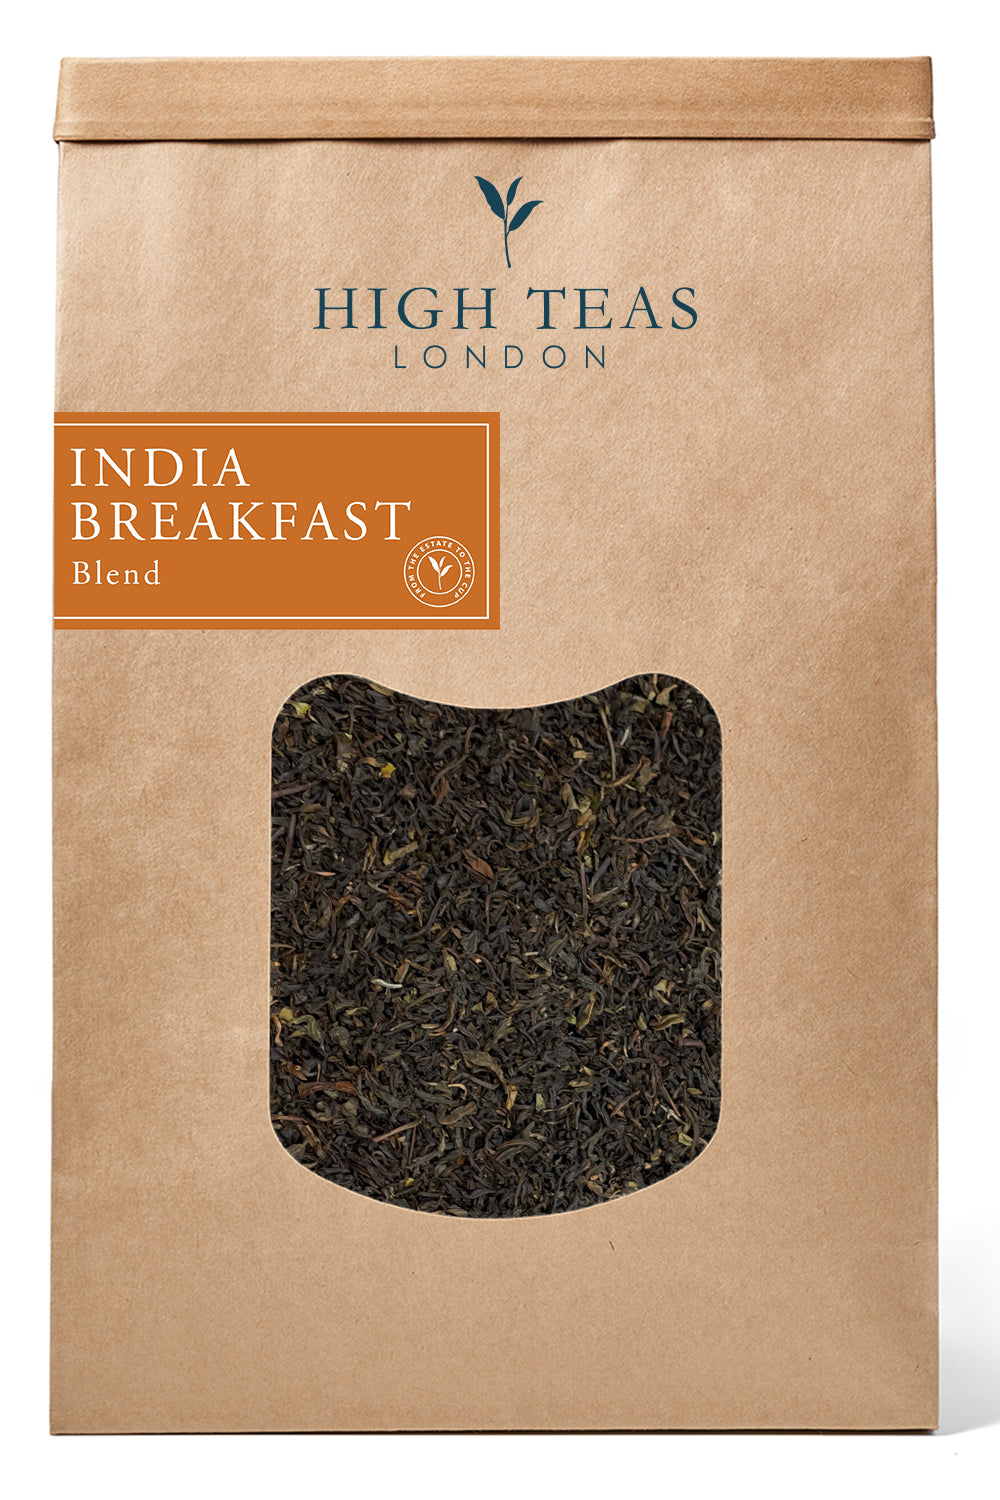 India Breakfast Blend-500g-Loose Leaf Tea-High Teas